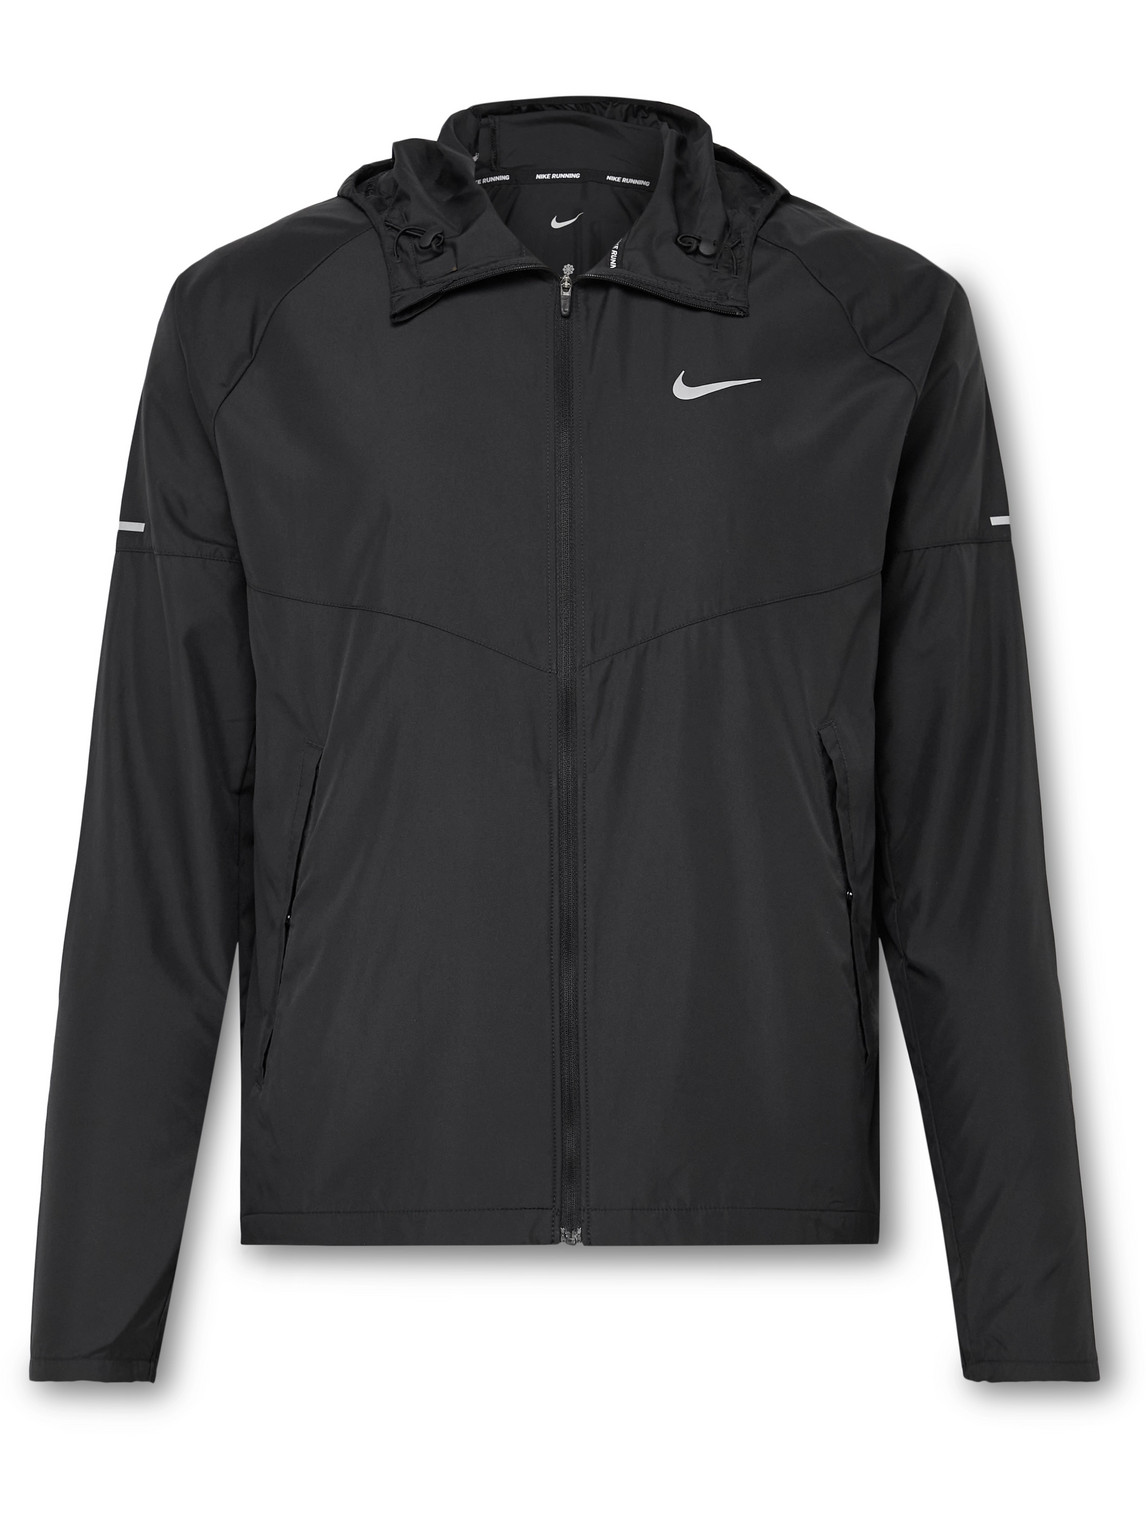 Nike Repel Miller Dri-fit Hooded Jacket In Black